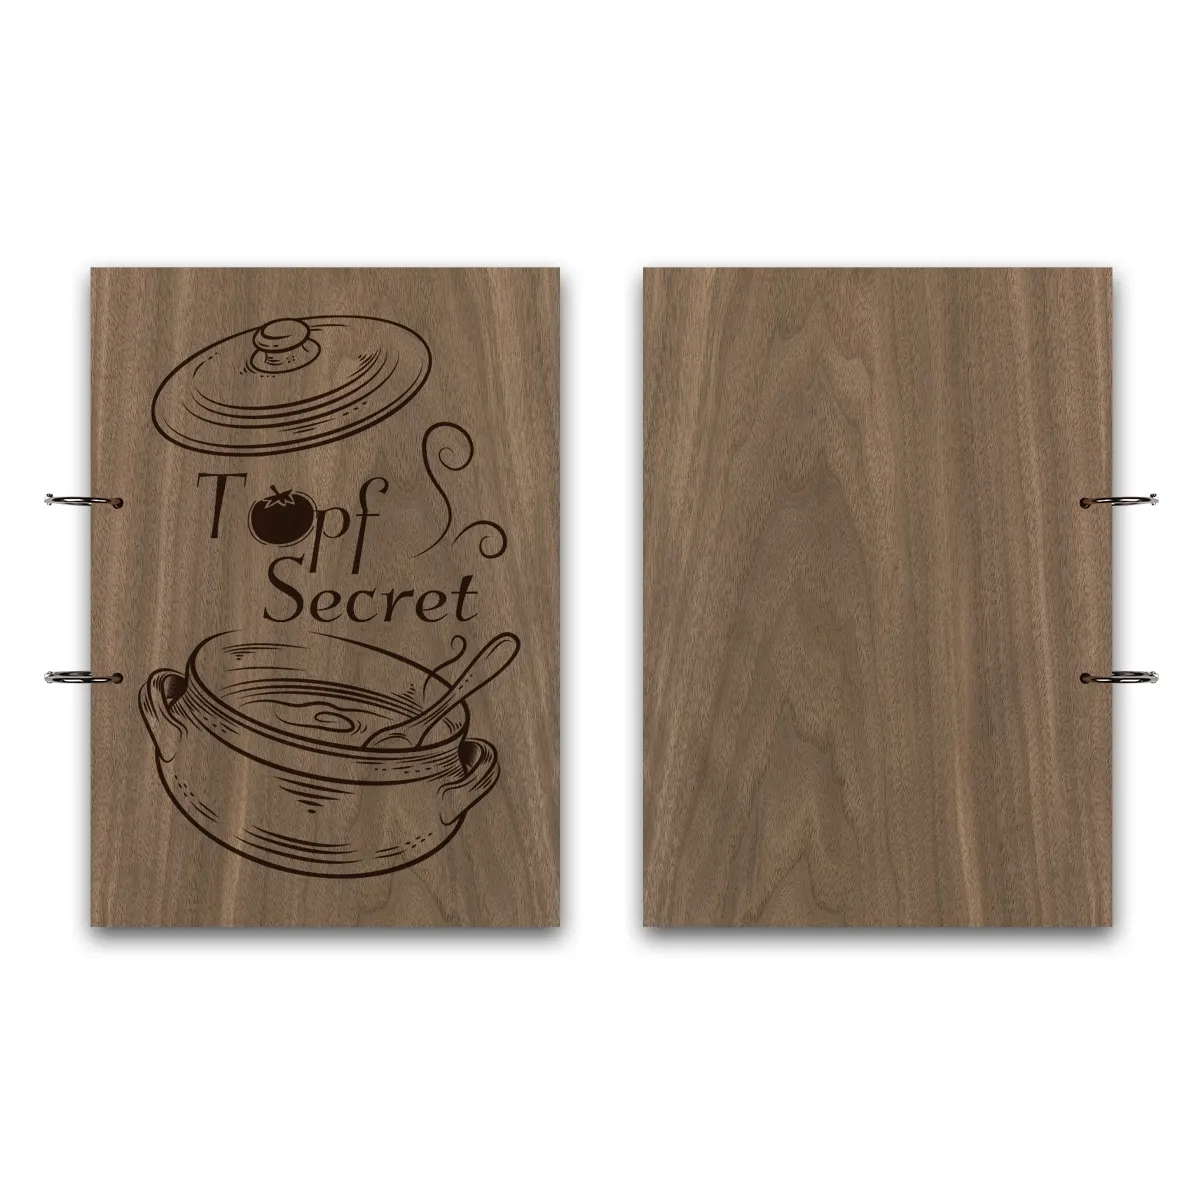 Rezeptbuch Nussbaum Holz A4 hoch - Topf Secret